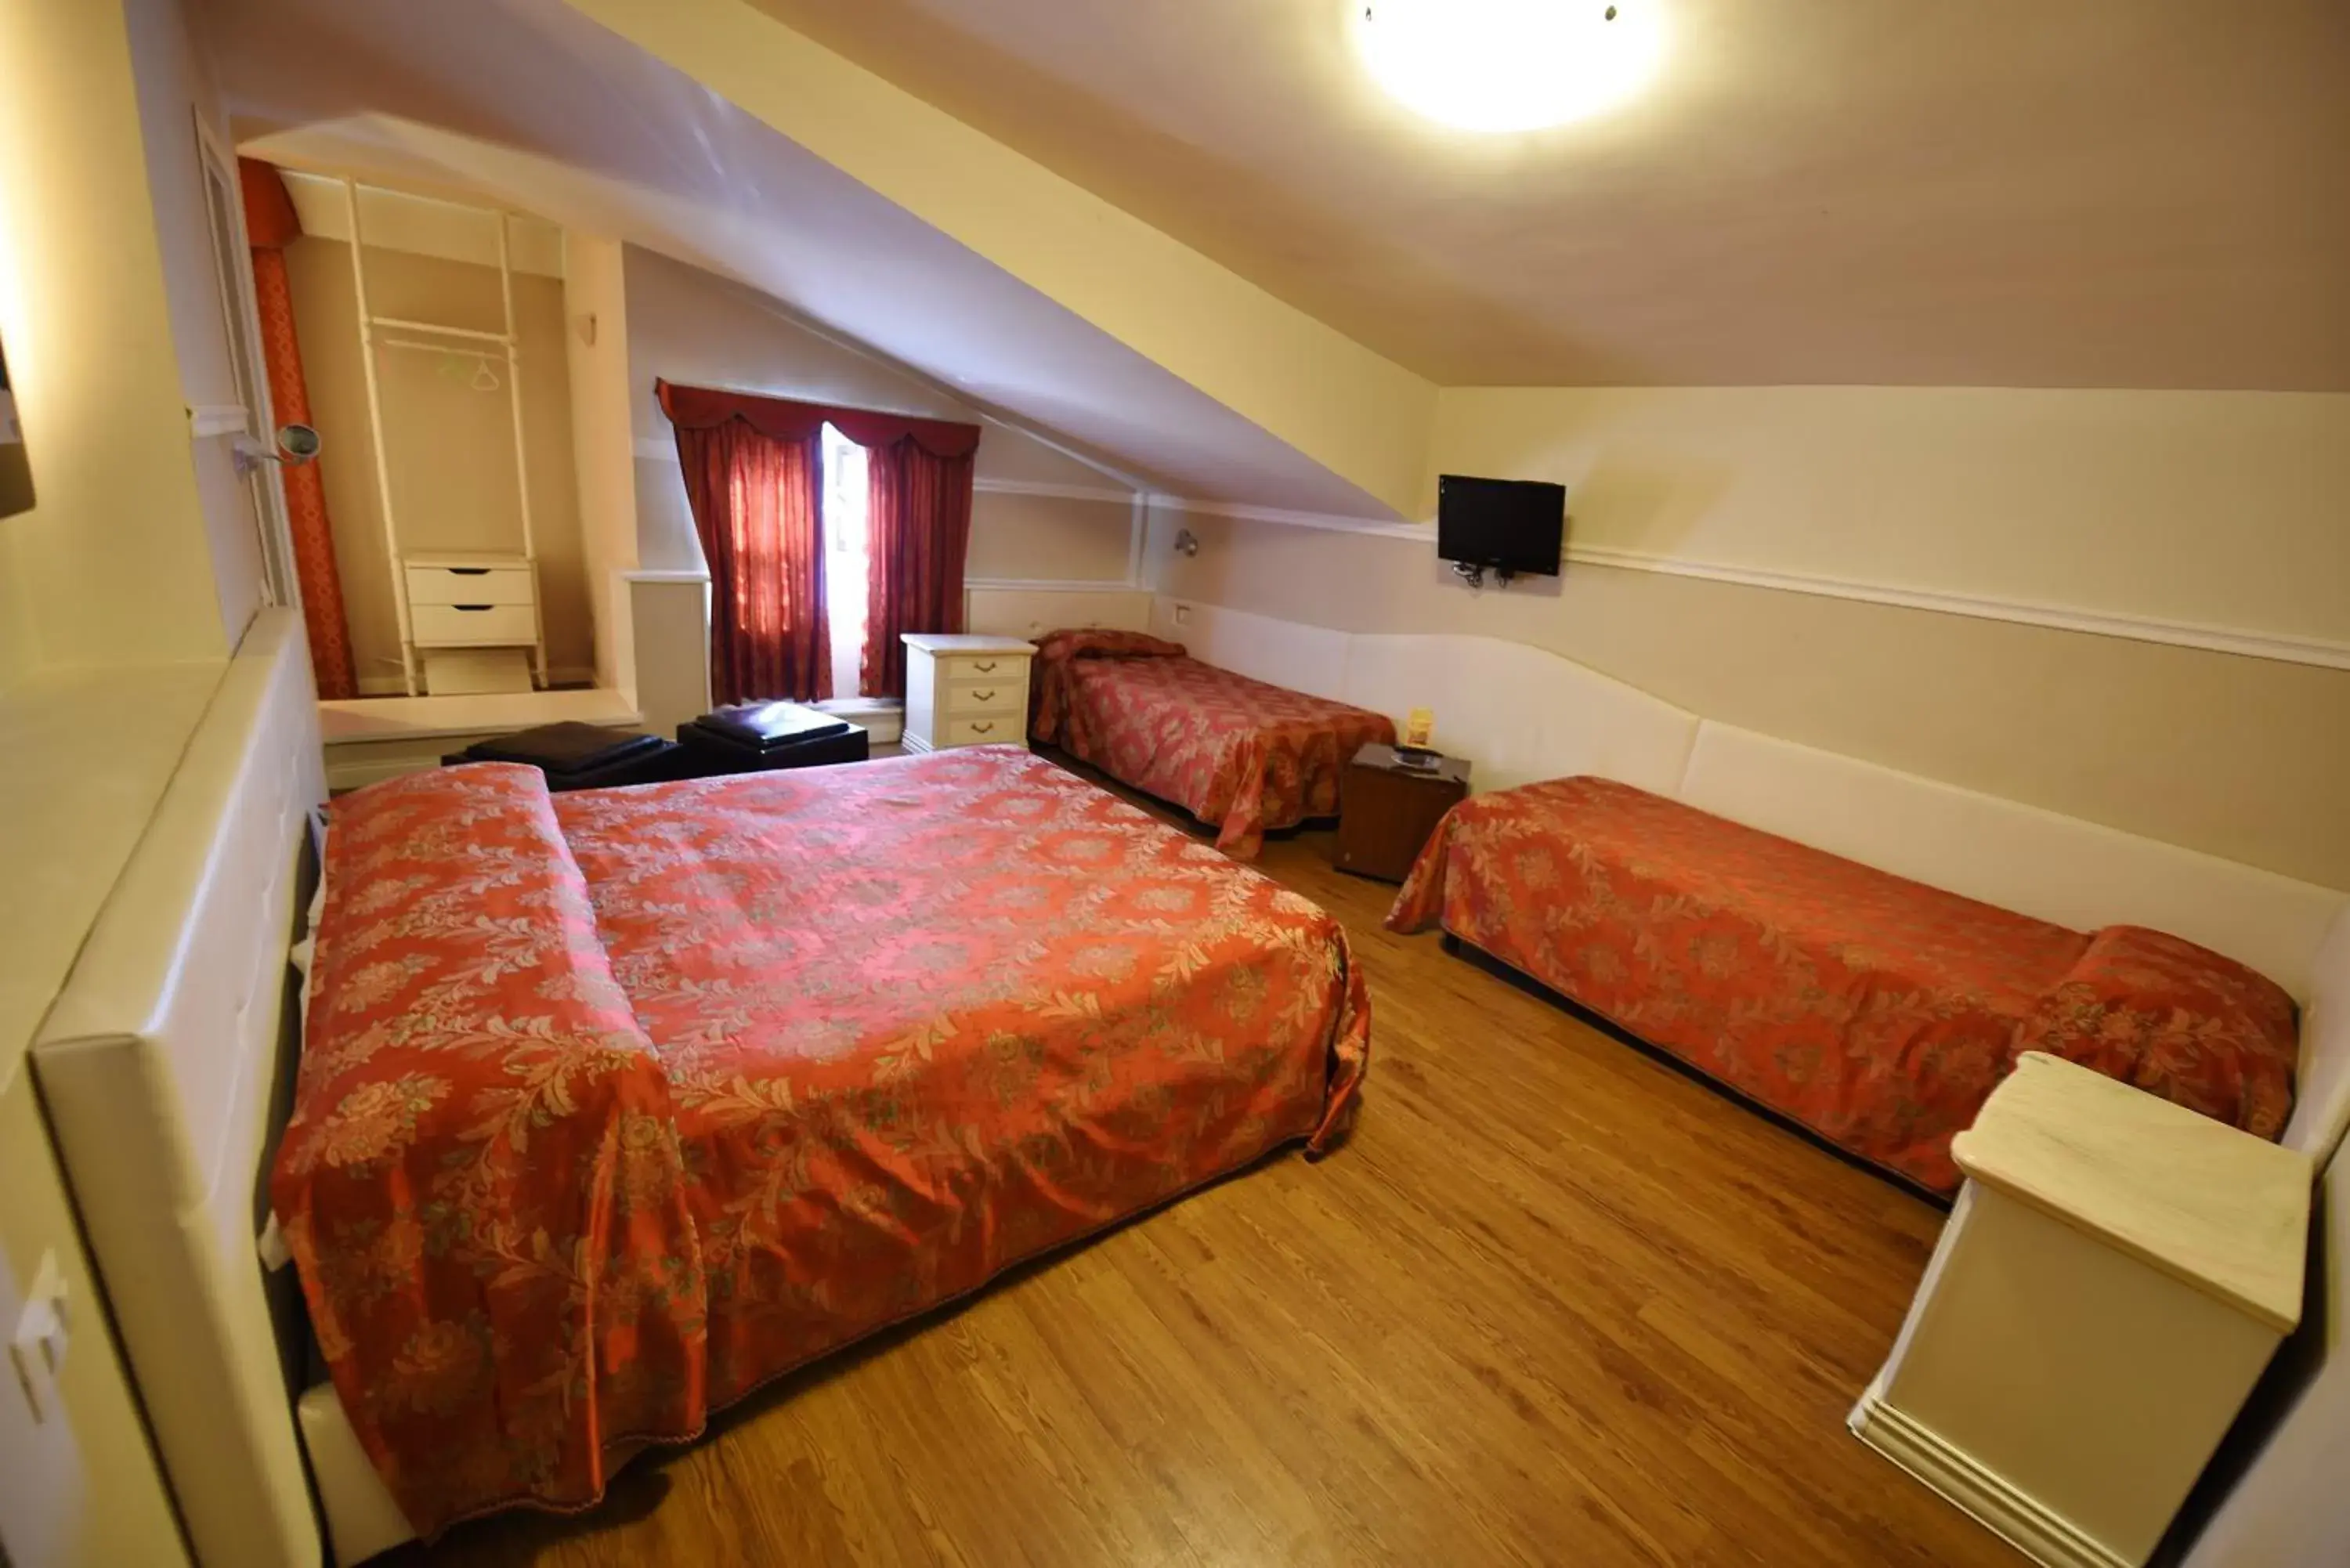 Bed, Room Photo in Hotel Al Castello